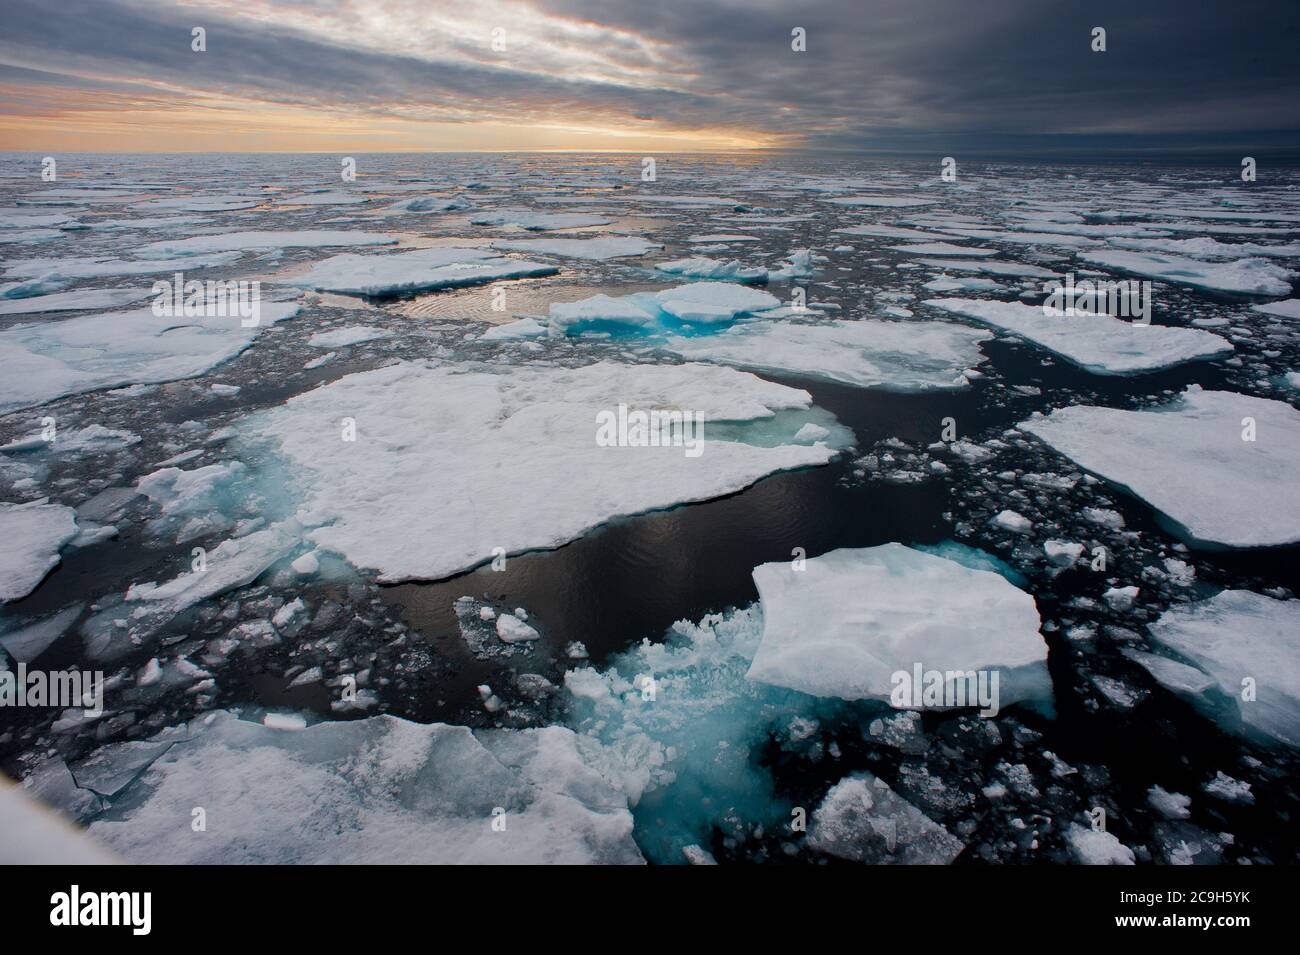 Nördliche arktische Eisschollen werden in dieser Weitwinkelansicht aufgebrochen gesehen, wobei die Sonne am Horizont untergeht.vom Schiff auf See aufgenommen. Stockfoto